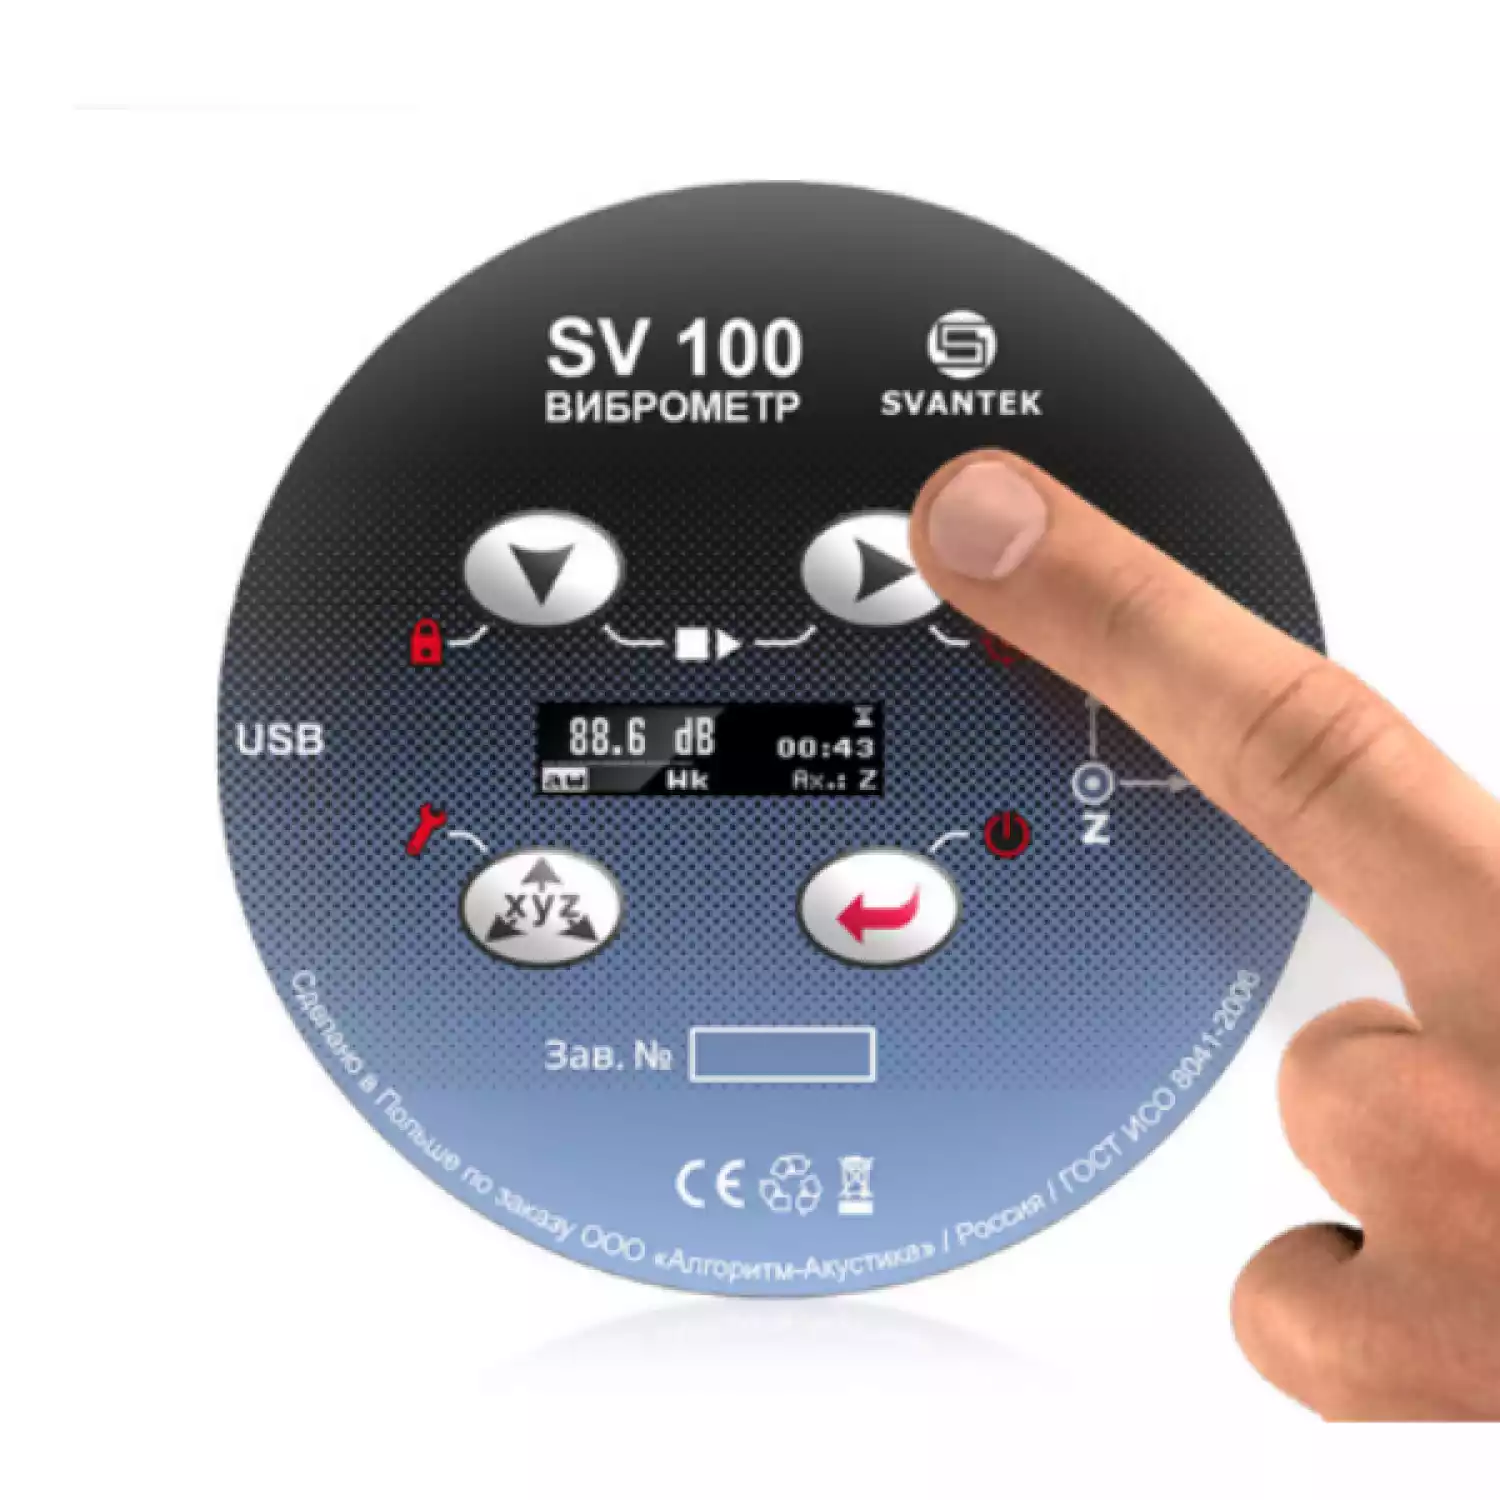 SV 100 виброметр трехканальный, анализатор спектра - 3